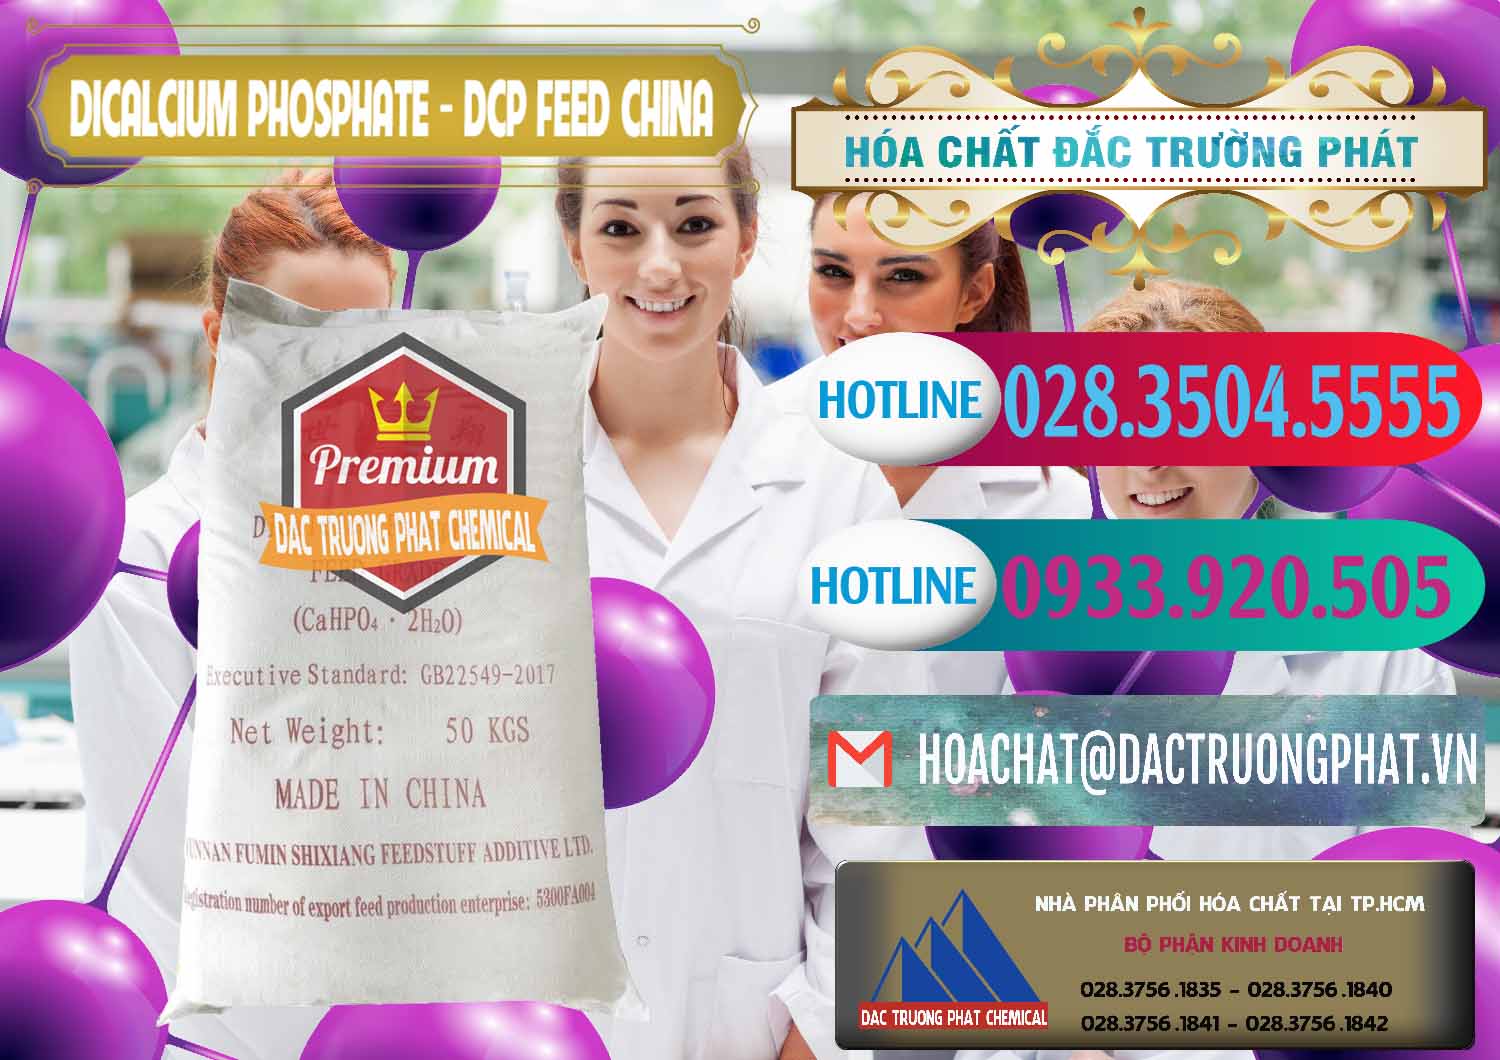 Chuyên kinh doanh ( bán ) Dicalcium Phosphate - DCP Feed Grade Trung Quốc China - 0296 - Cty chuyên cung ứng & phân phối hóa chất tại TP.HCM - truongphat.vn